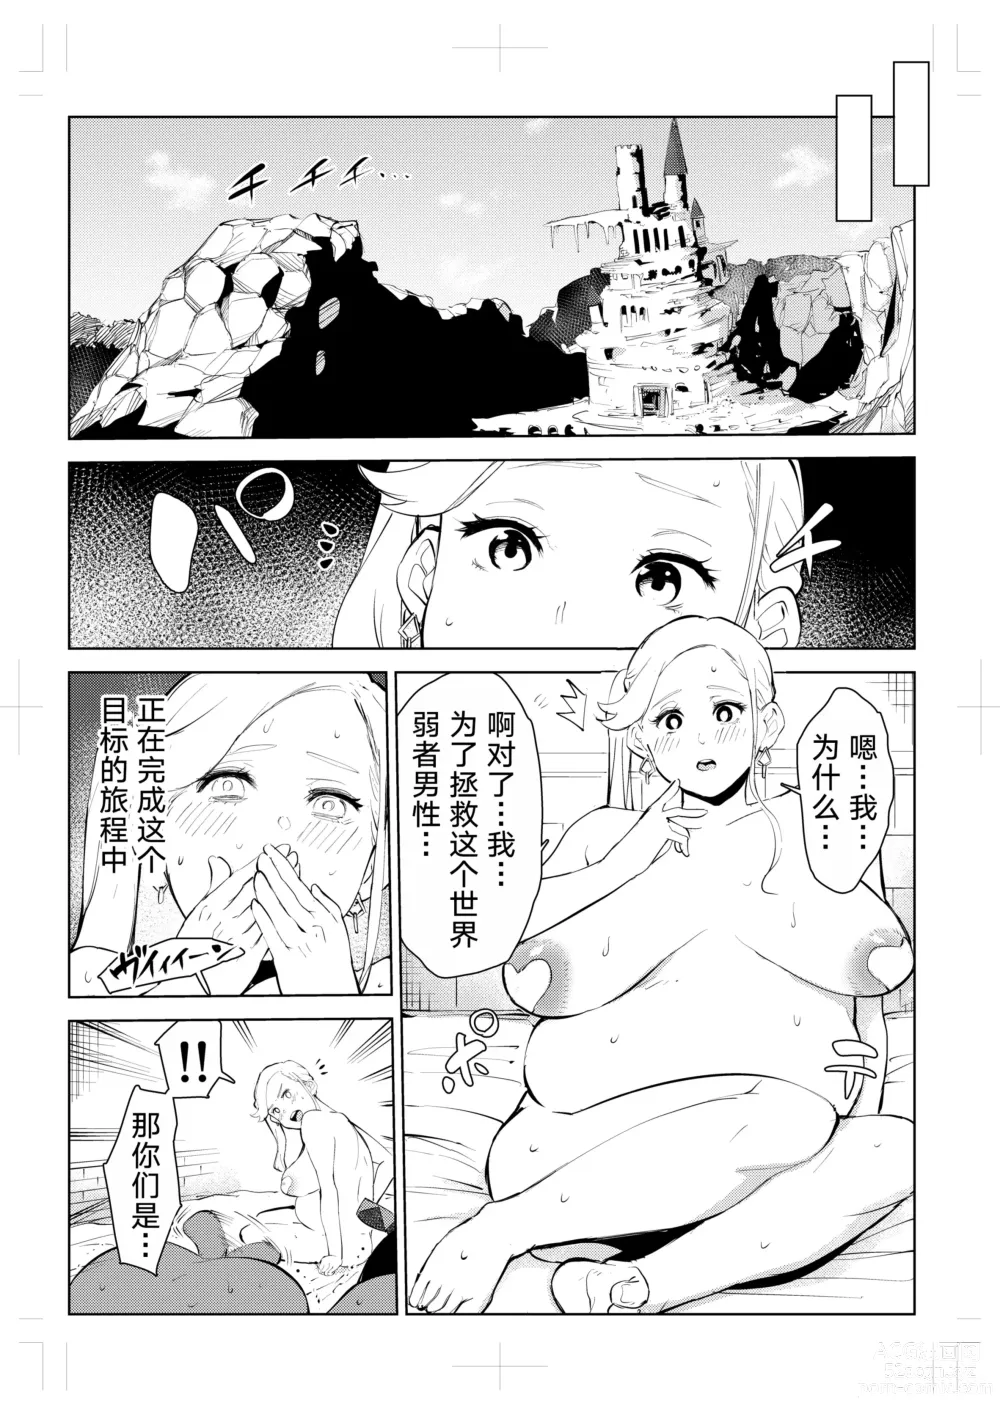 Page 109 of doujinshi 40-sai no Mahoutsukai 0